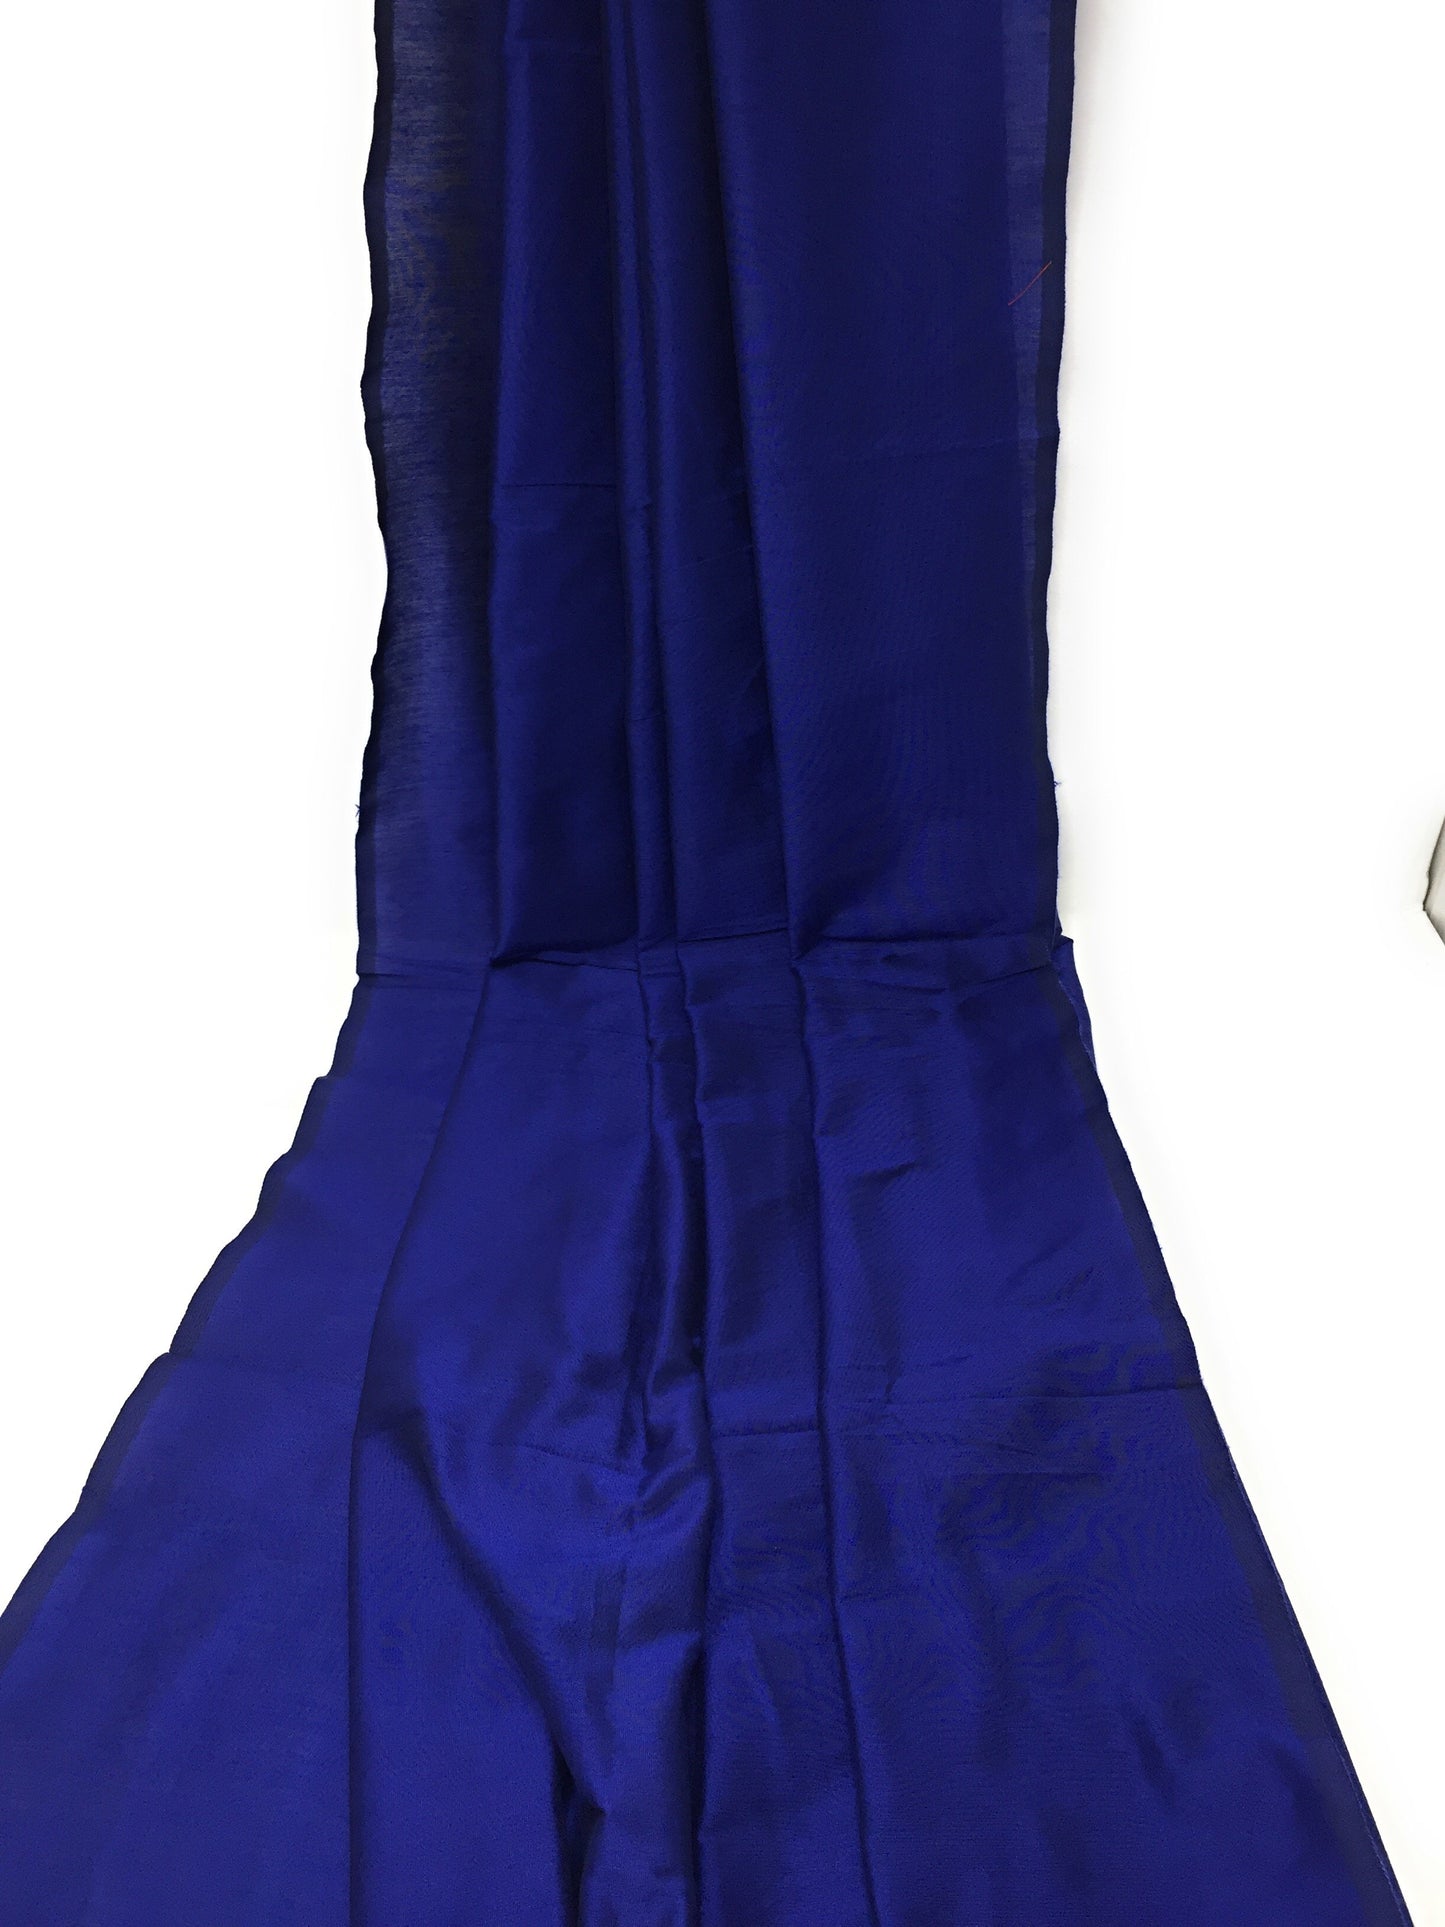 Blue Cotton Silk Dress Material